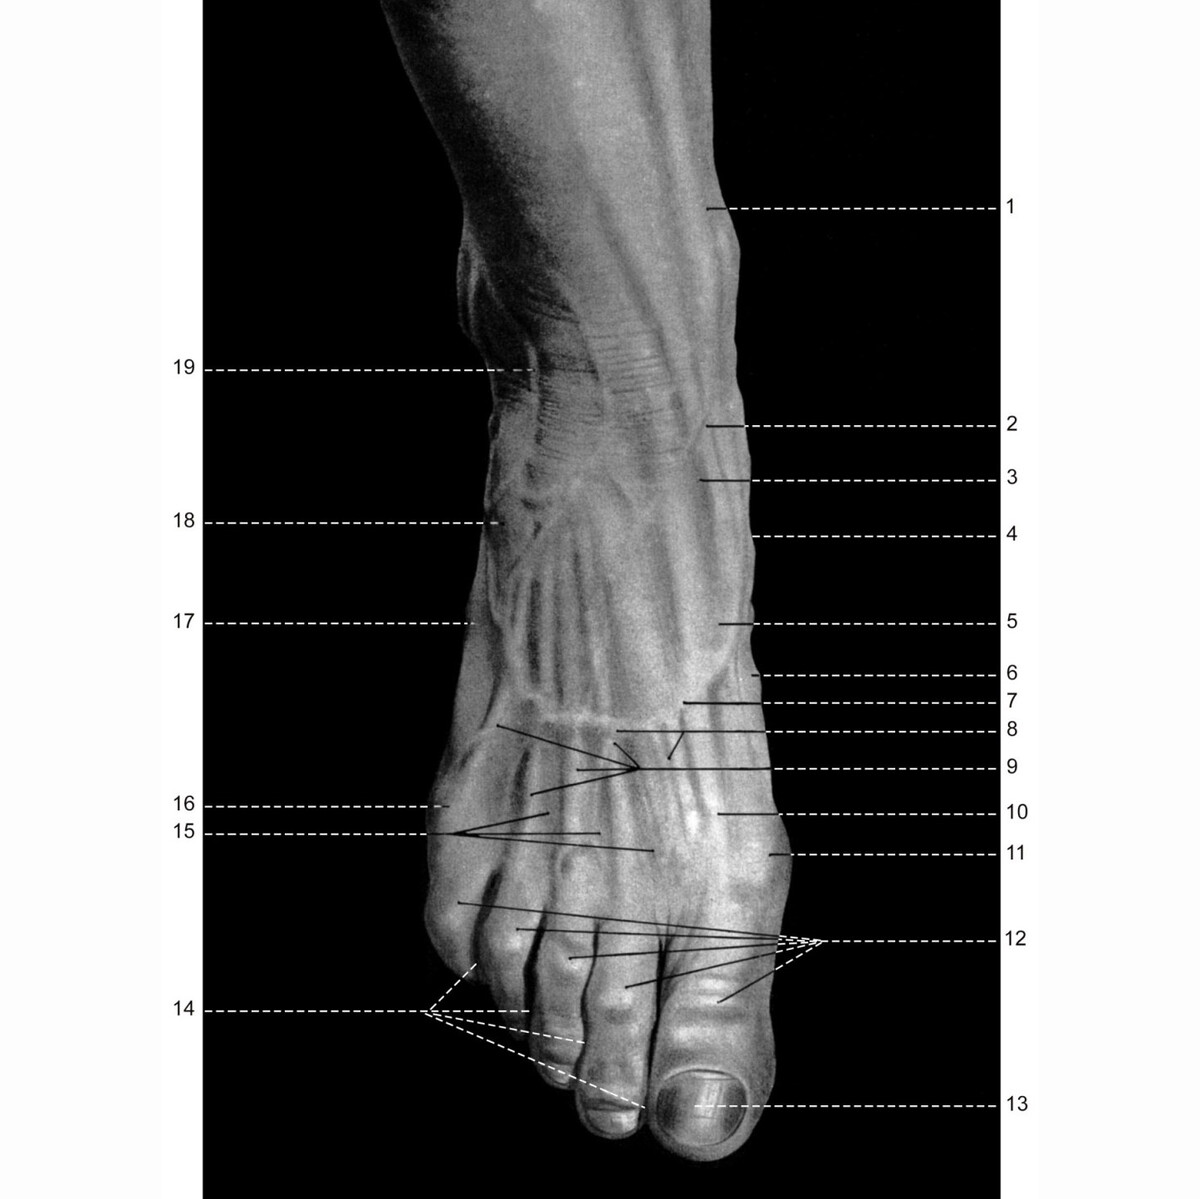 Визуальная анатомия стопы и лодыжки, тыльная сторона